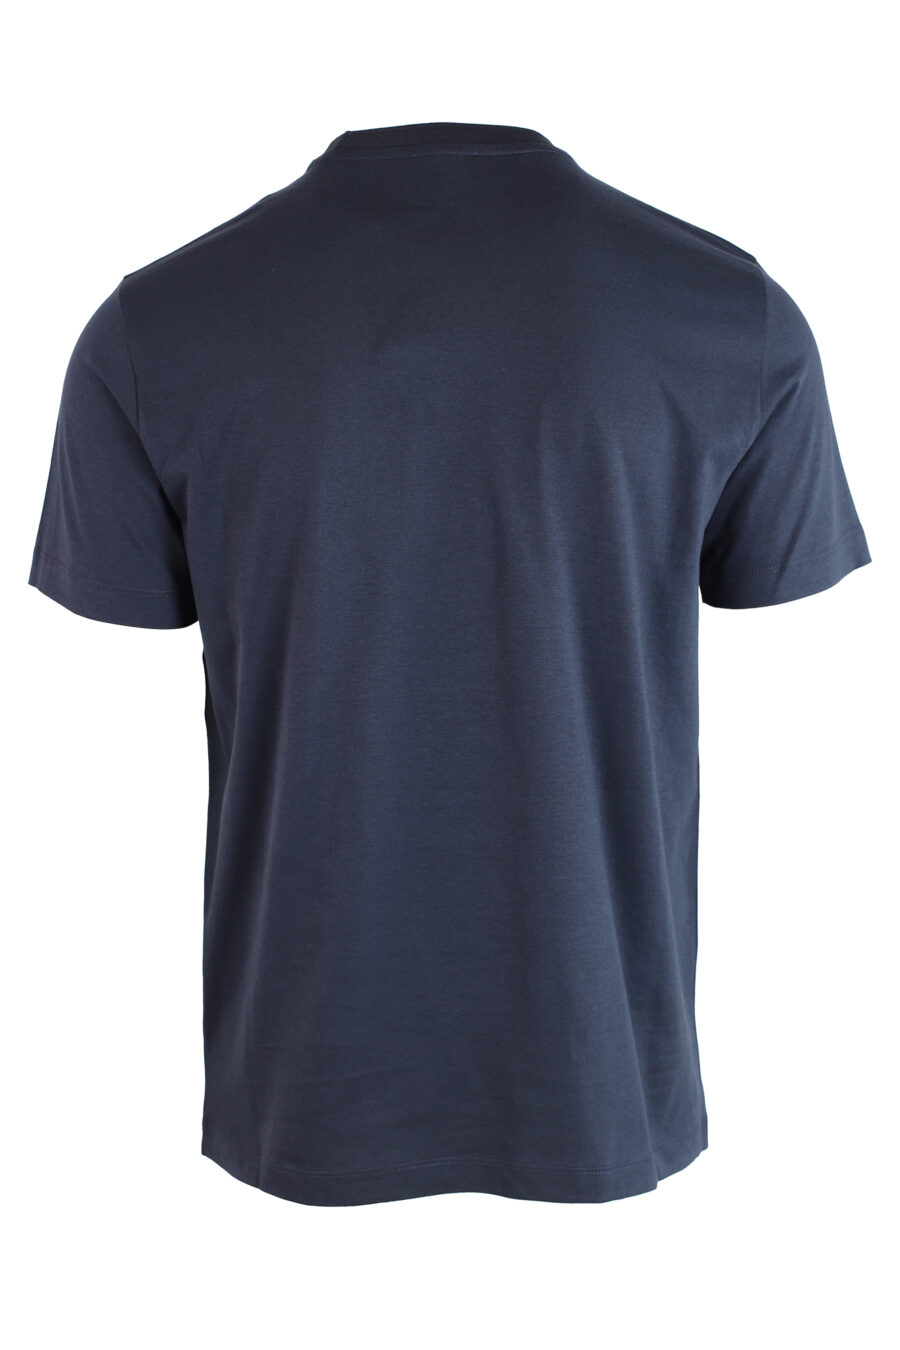 Camiseta azul oscuro con minilogo en parche dorado - IMG 3224